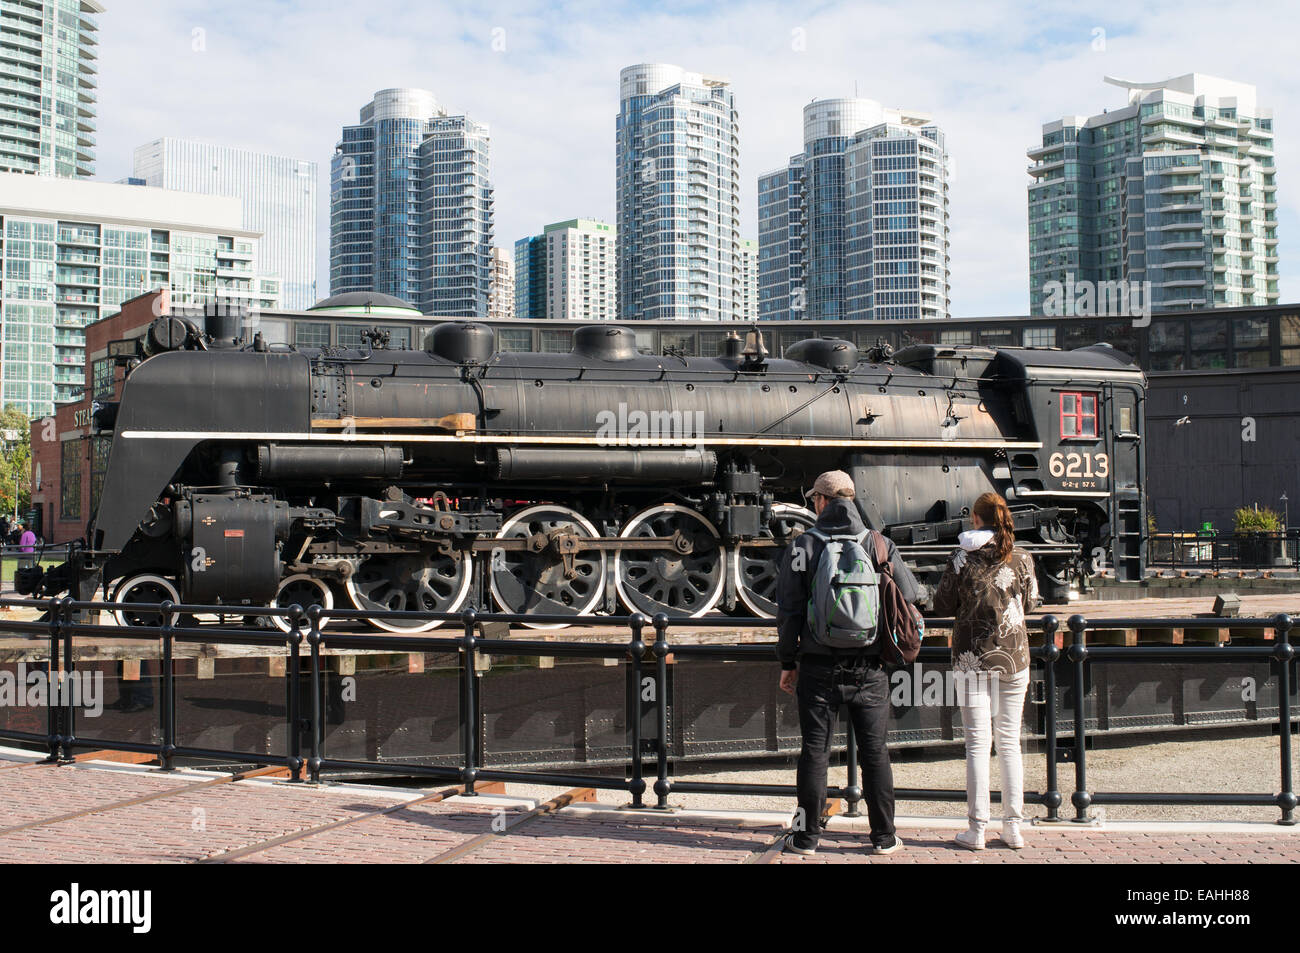 Couple 6213 train à vapeur sur la plaque à Rotonde de John Street, Toronto, Ontario, Canada Banque D'Images